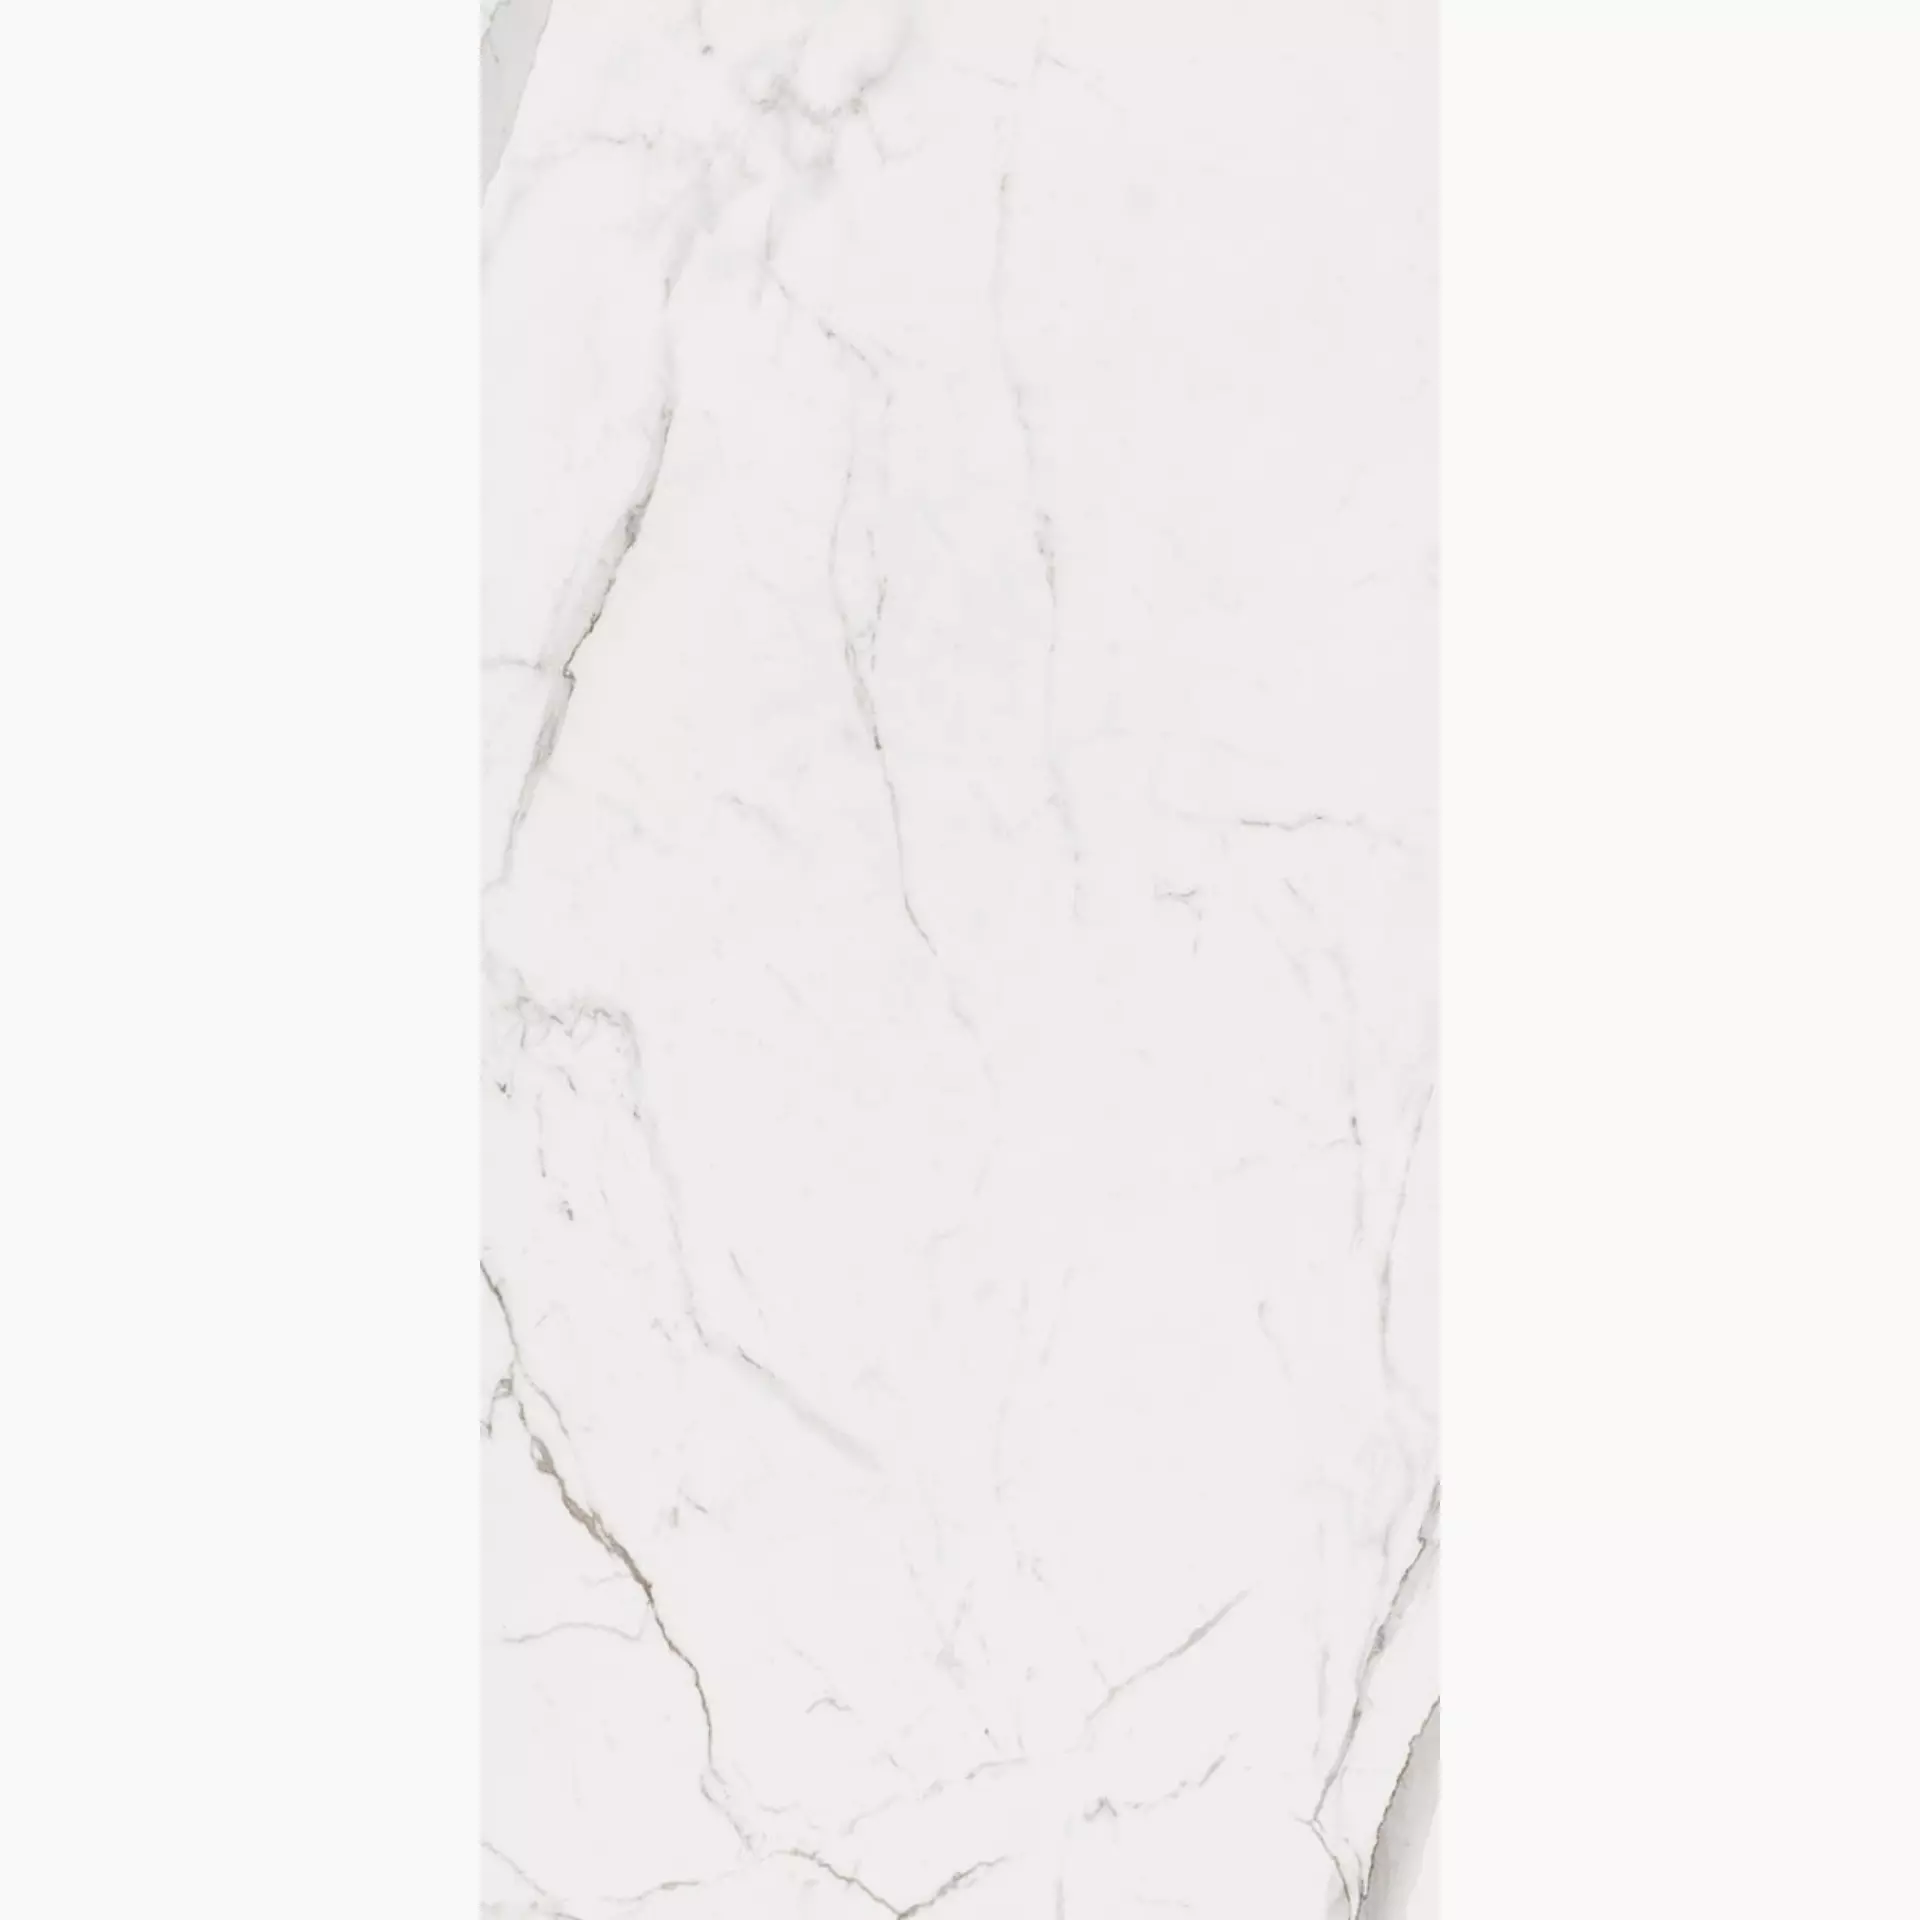 La Faenza Bianco White Natural Flat Matt 166243 90x180cm rectified 10mm - CAL BO 9018 RM